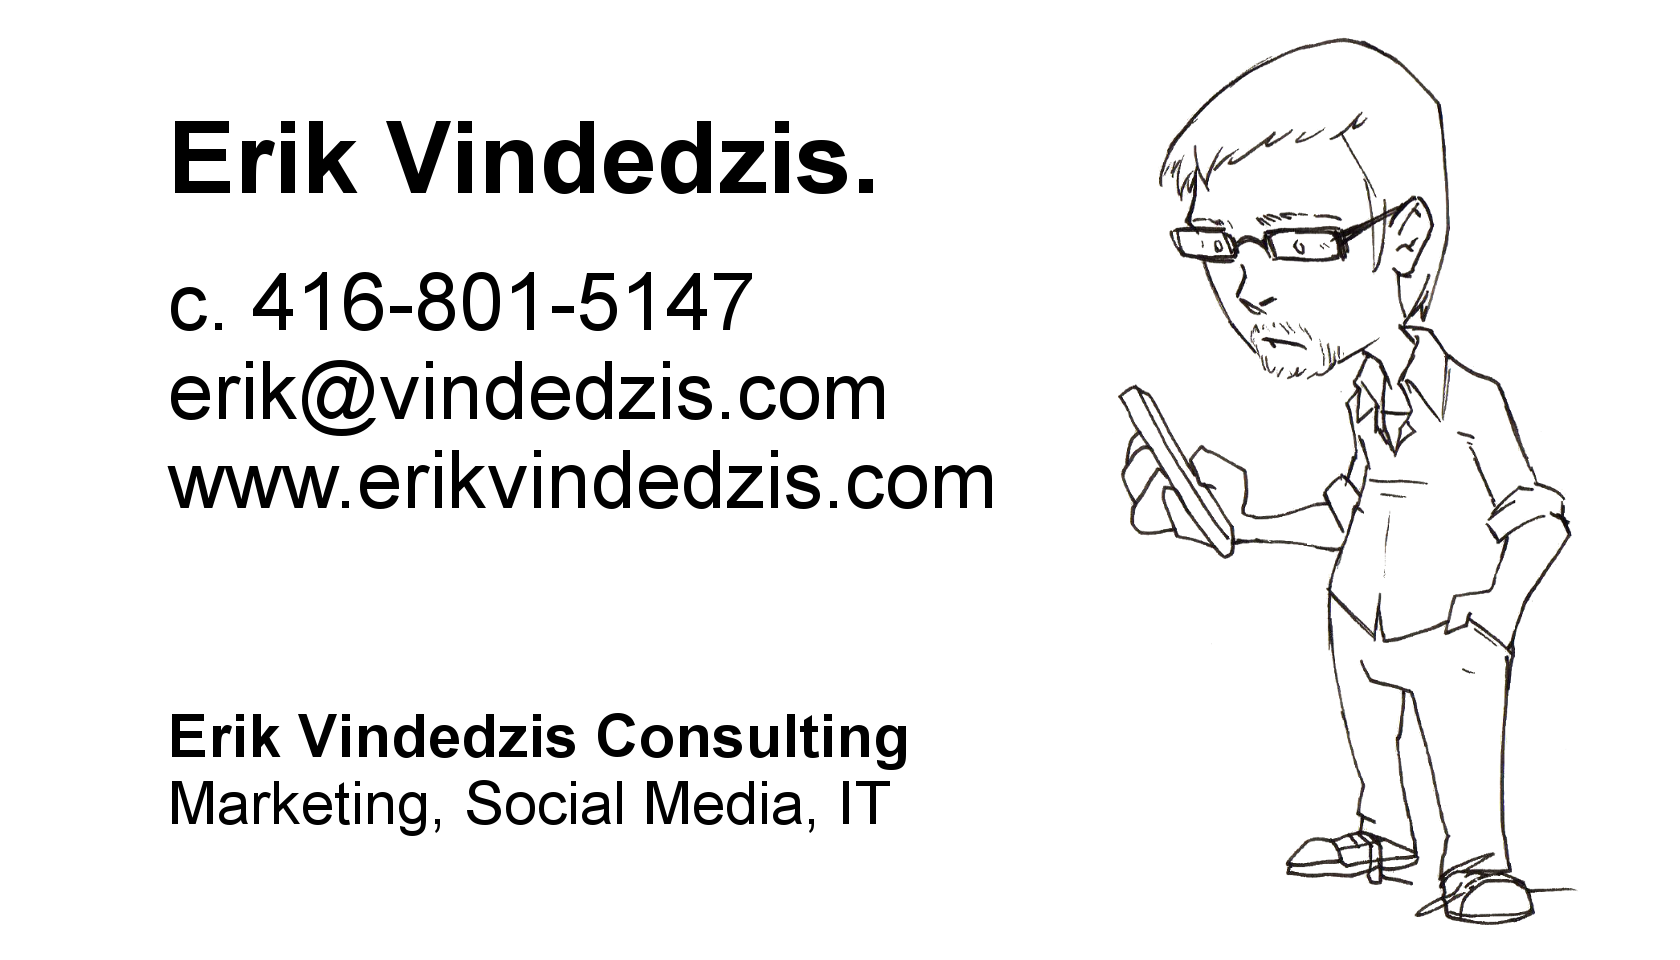 Erik Vindedzis Consulting